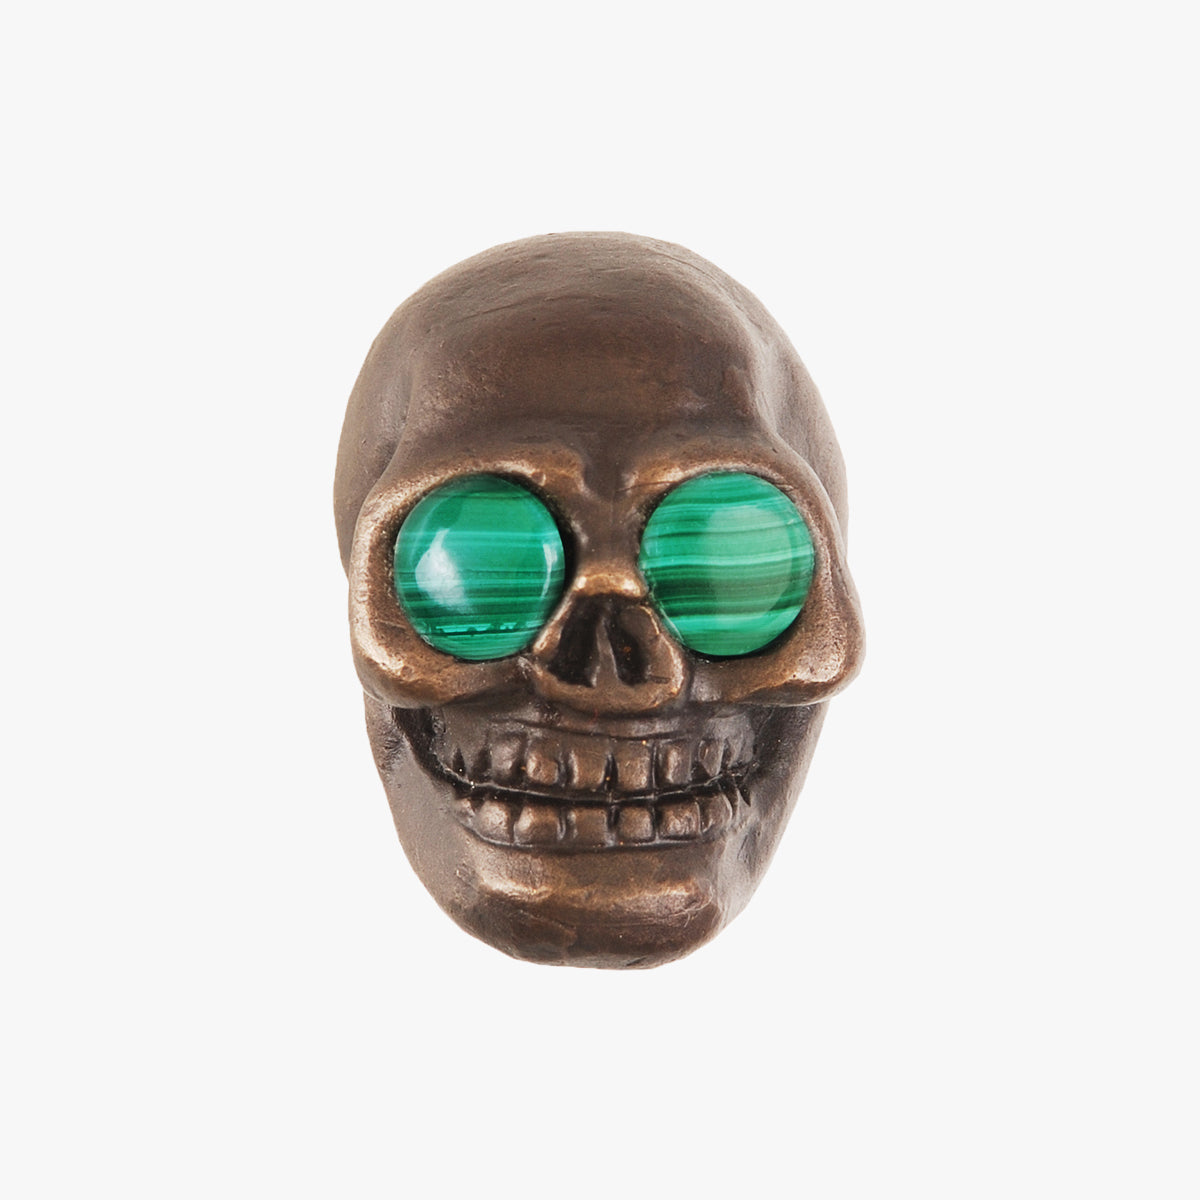 Skull knob handmade with malachite stone and dark bronze by Matthew Studios